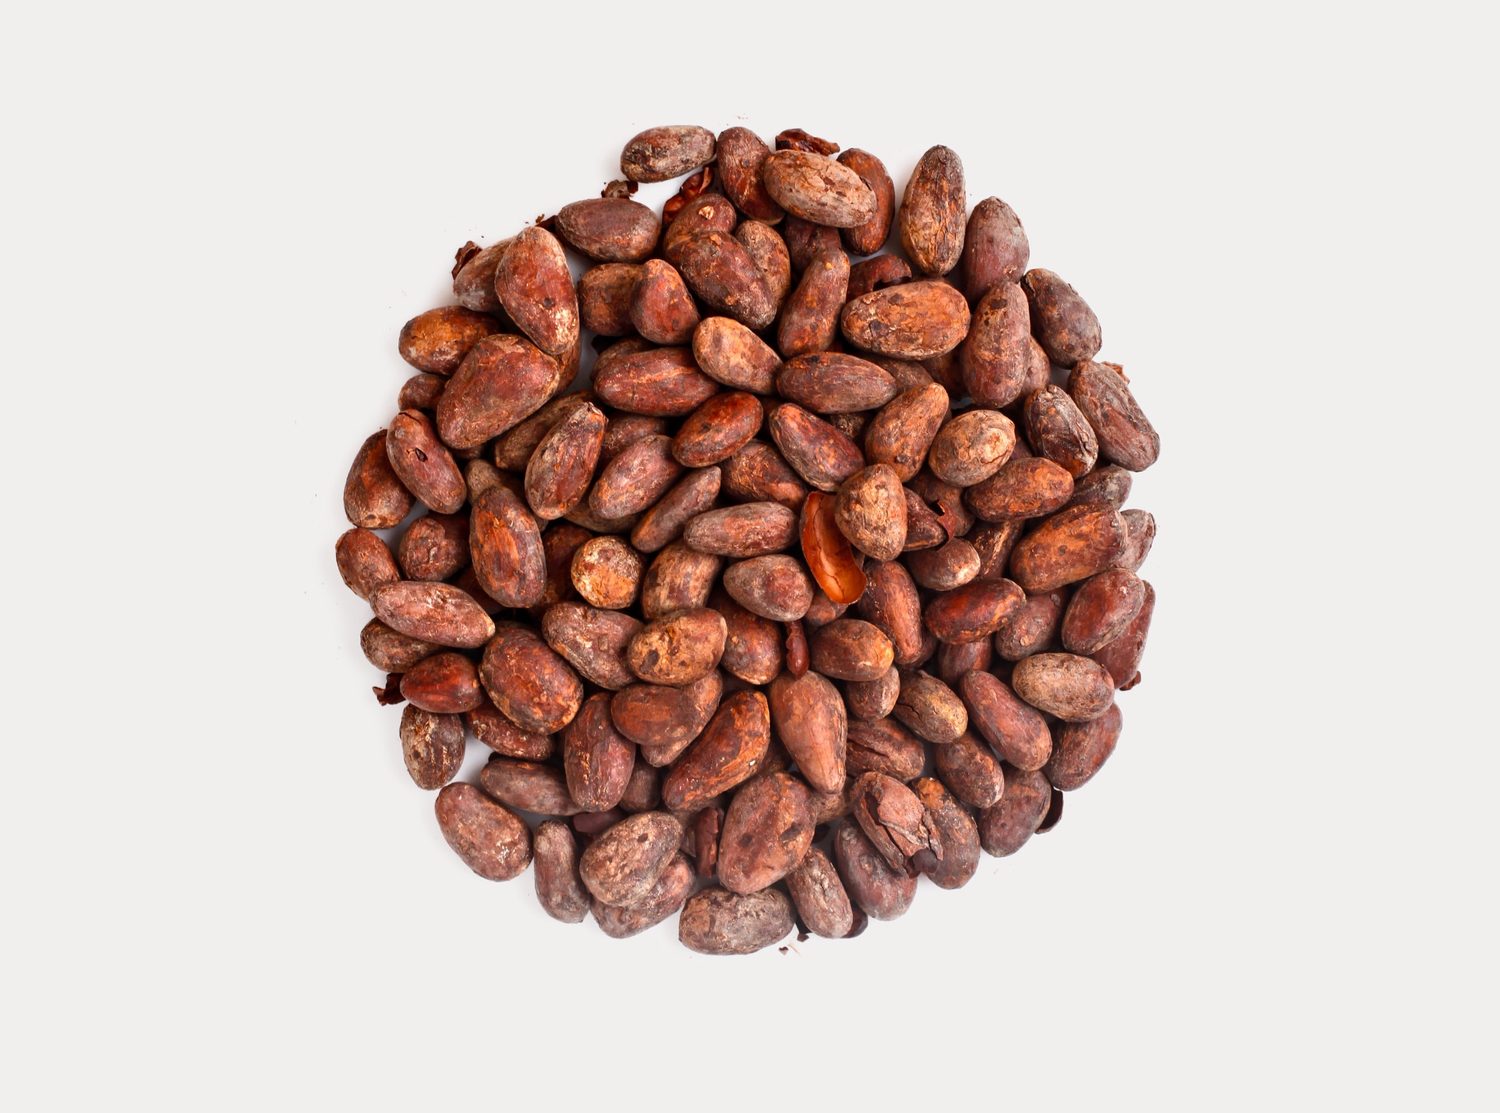 Při zpracování kakaových bobů vznikají dvě složky a to kakaový prášek a kakaové máslo